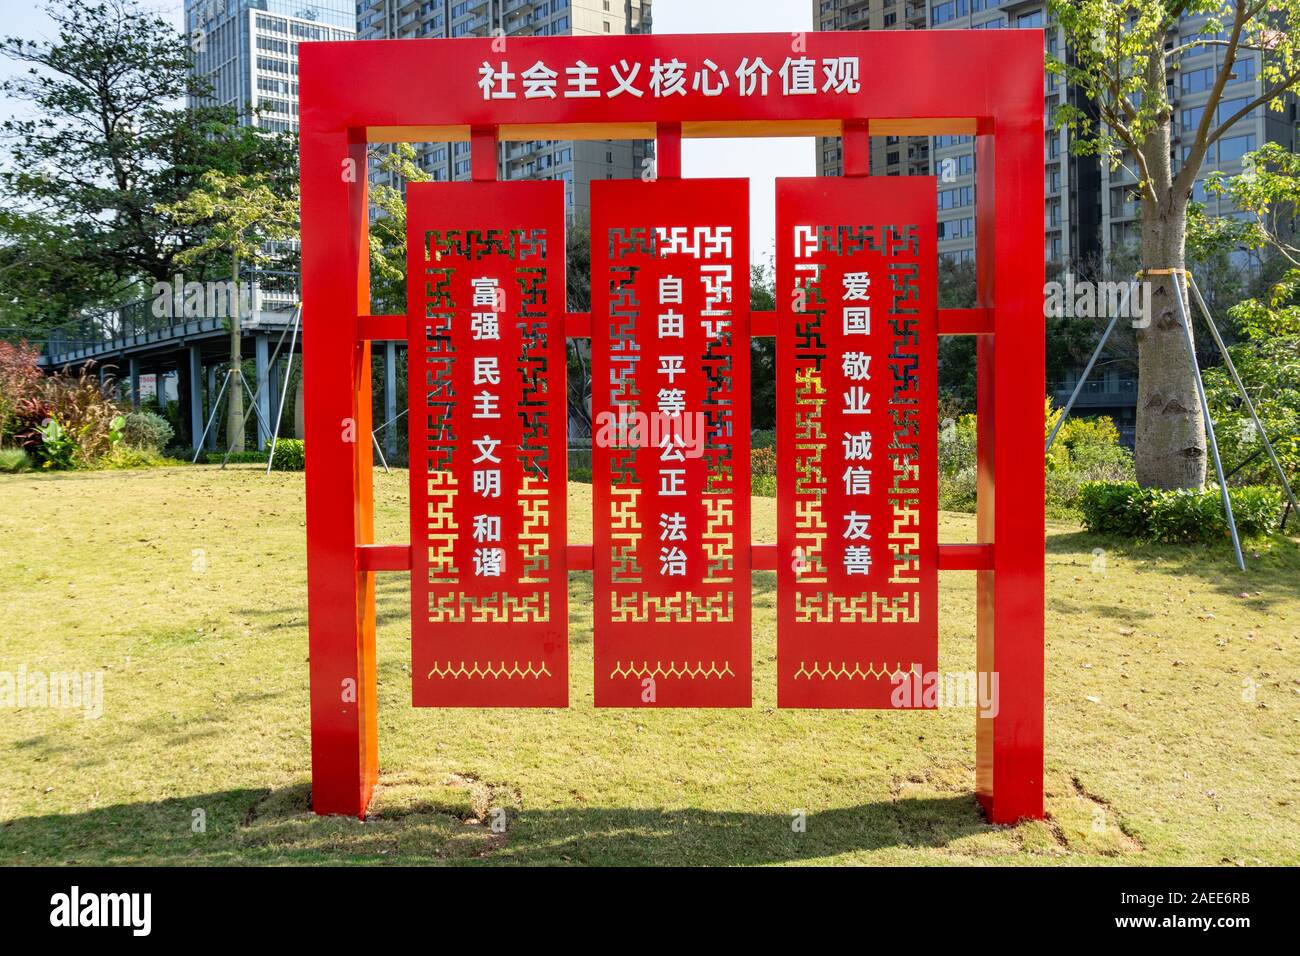 Mots caractères chinois énonçant des principes d'un développement harmonieux et la société civilisée à Shenzhen Banque D'Images